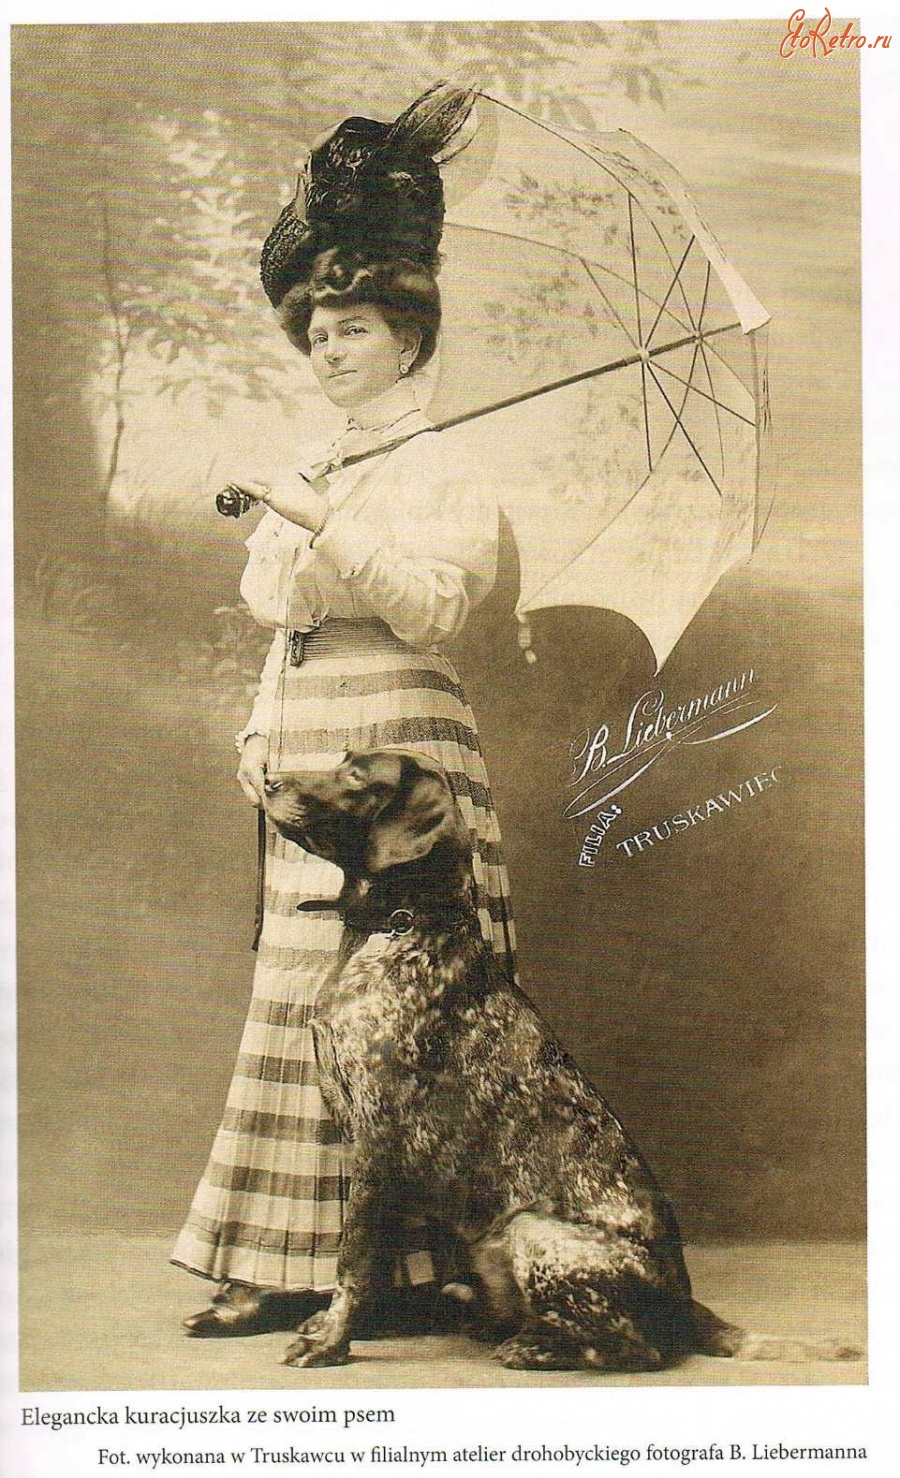 Трускавец - Елегантна відпочивальниця зі своєю собакою в Трускавці.Фото зроблене в Трускавці в філіальним ательє дрогобицького фотографа  B.Libermanna.